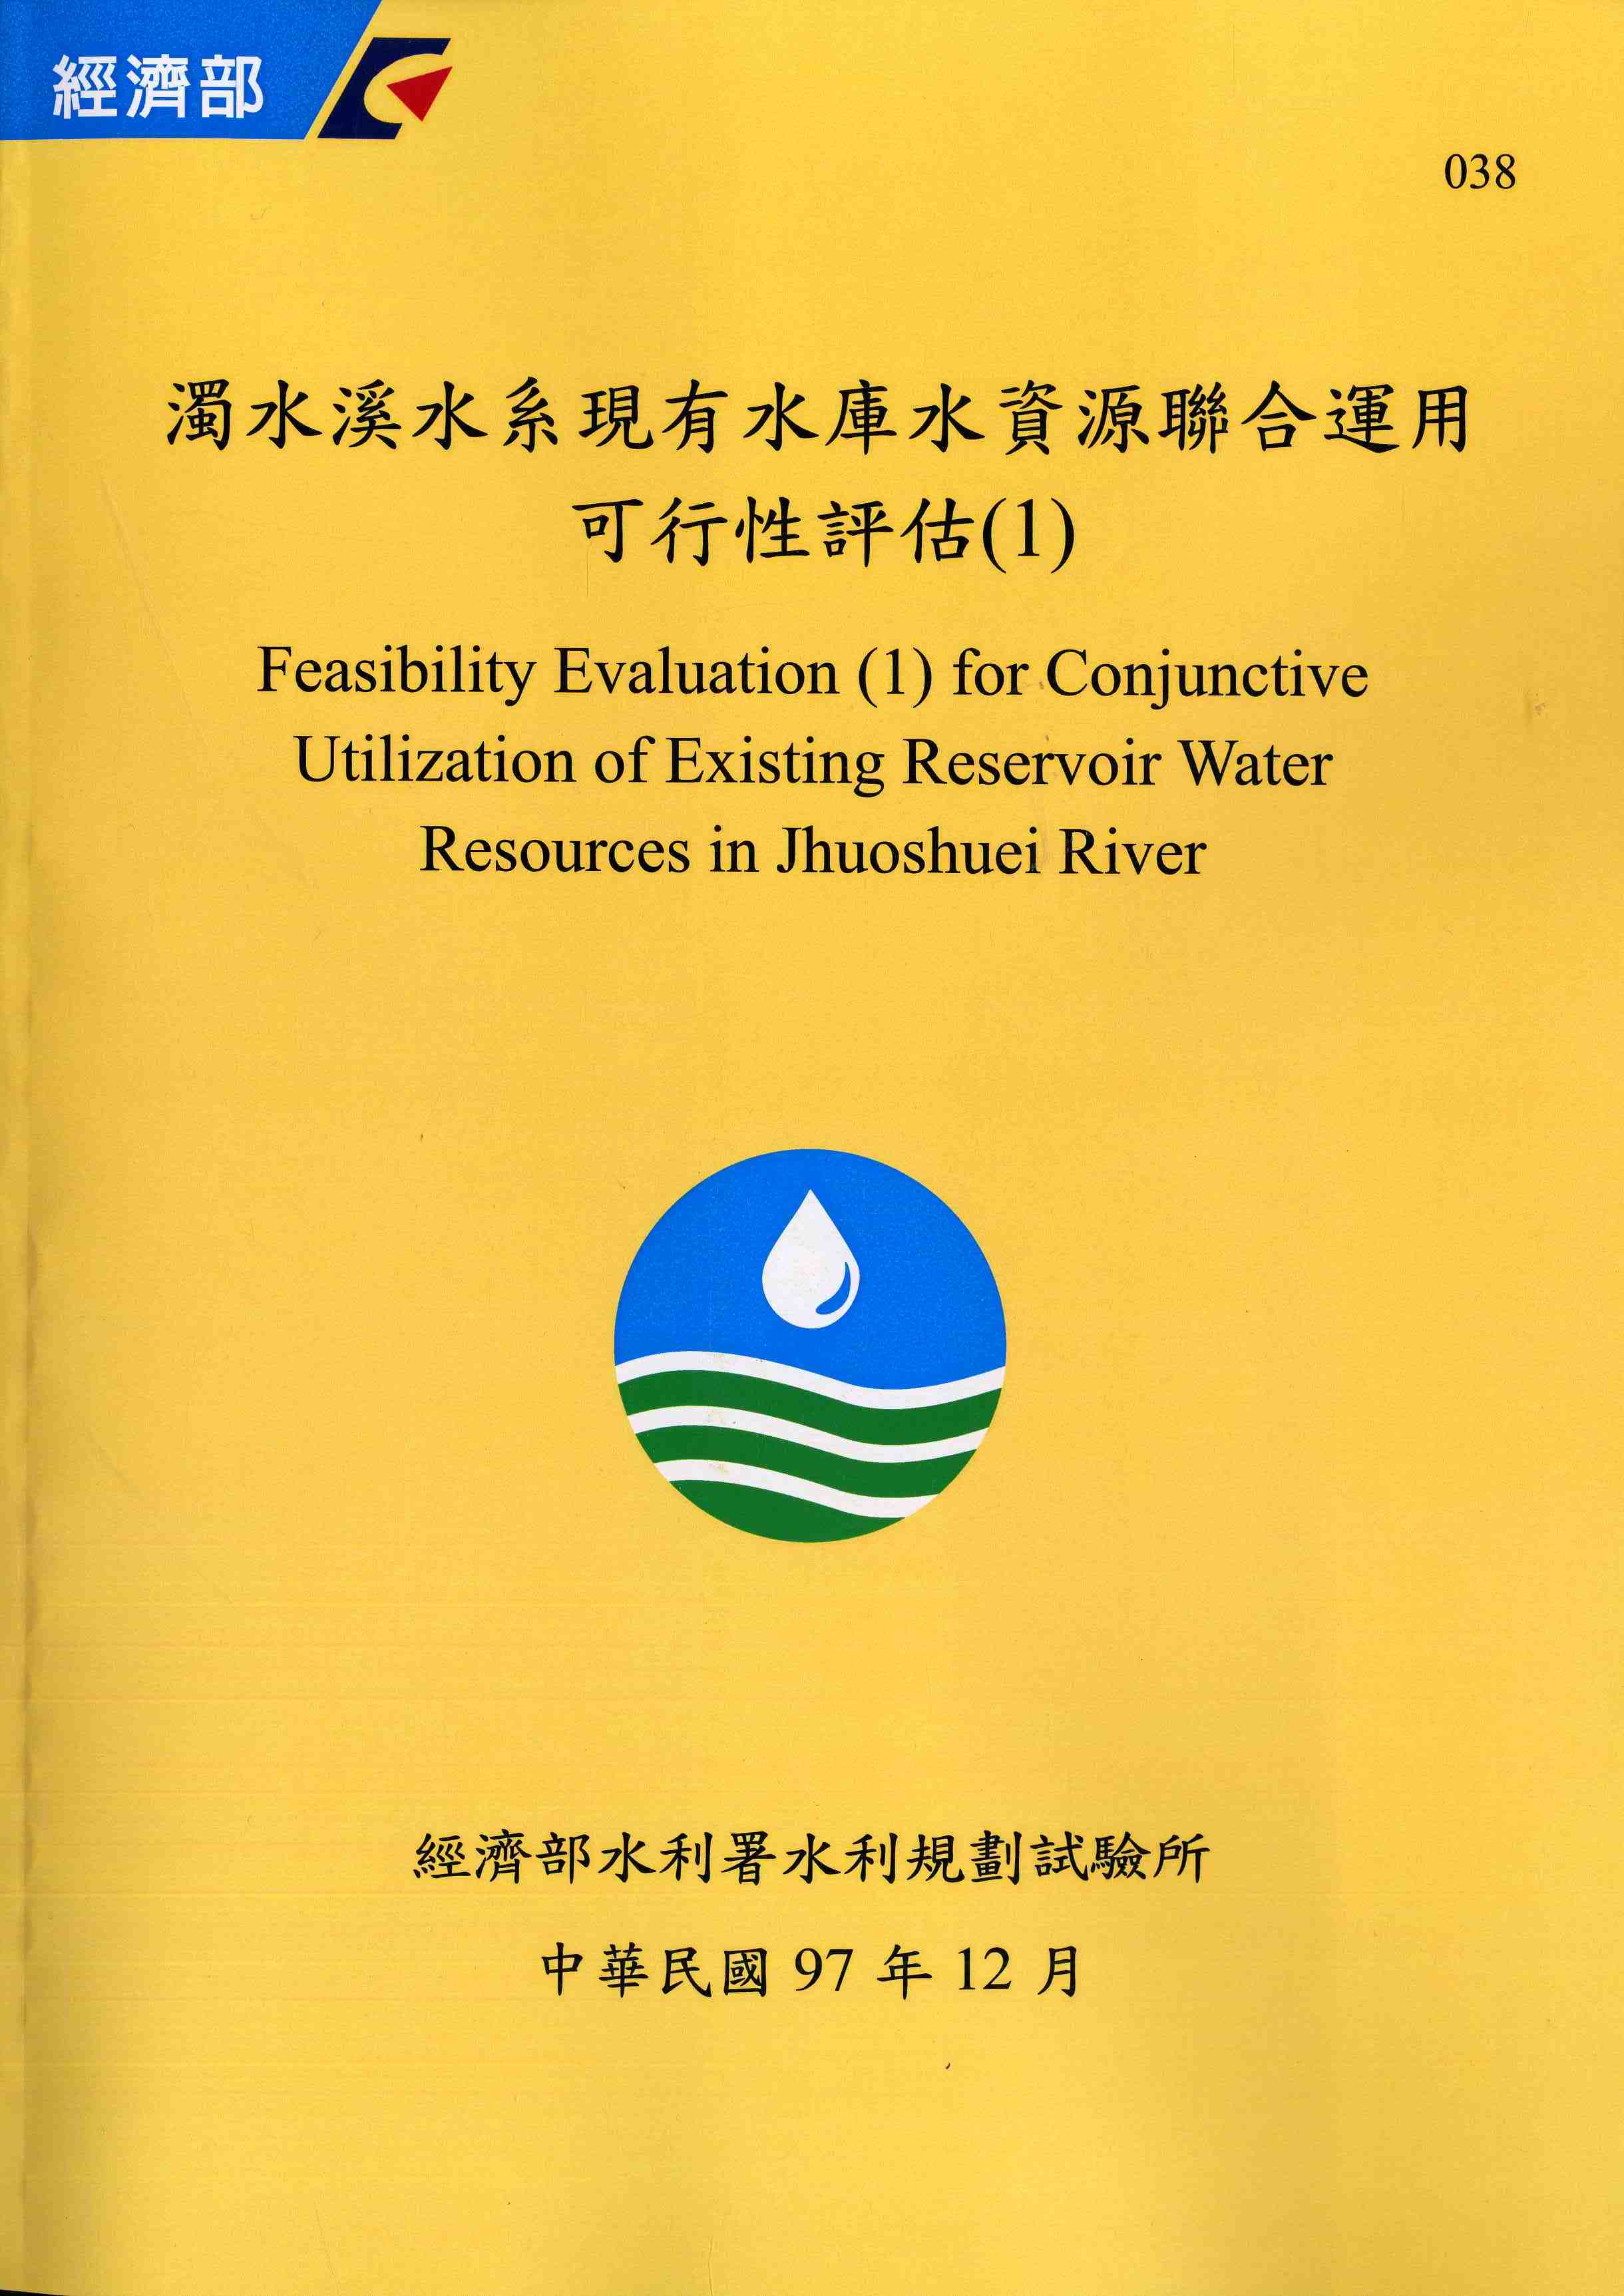 濁水溪水系現有水庫水資源聯合運用可行性評估(1)